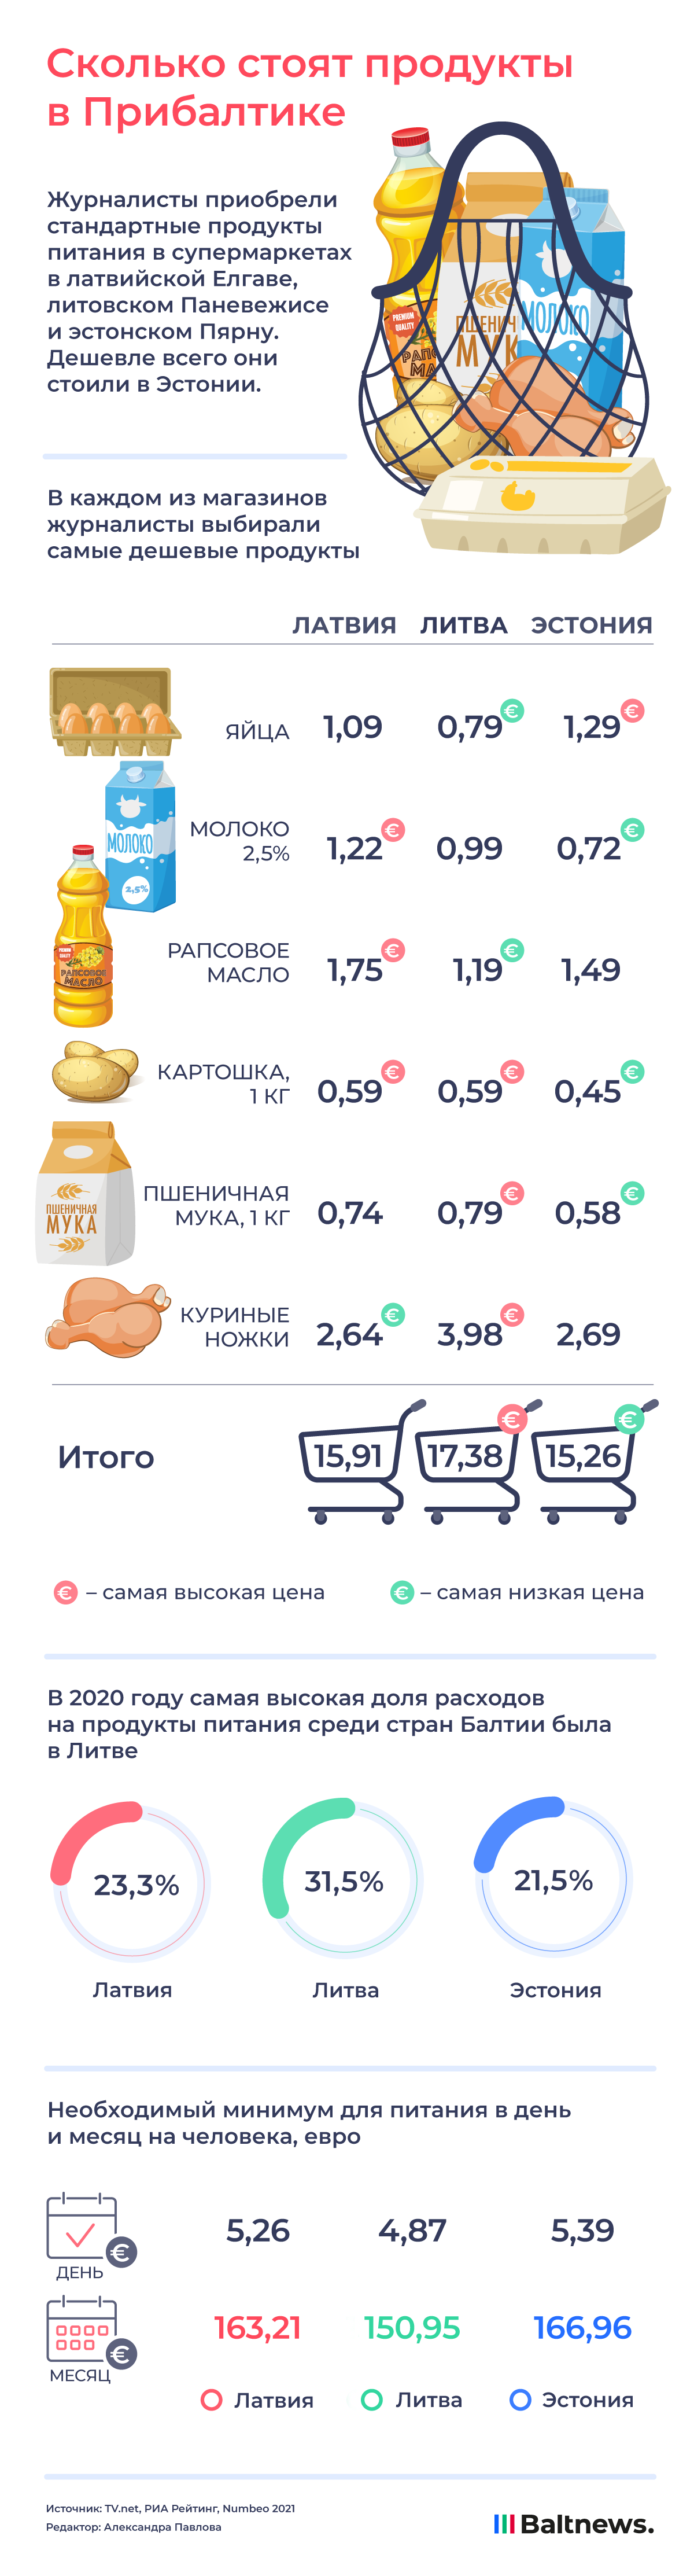 Сколько стоят продукты в Прибалтике